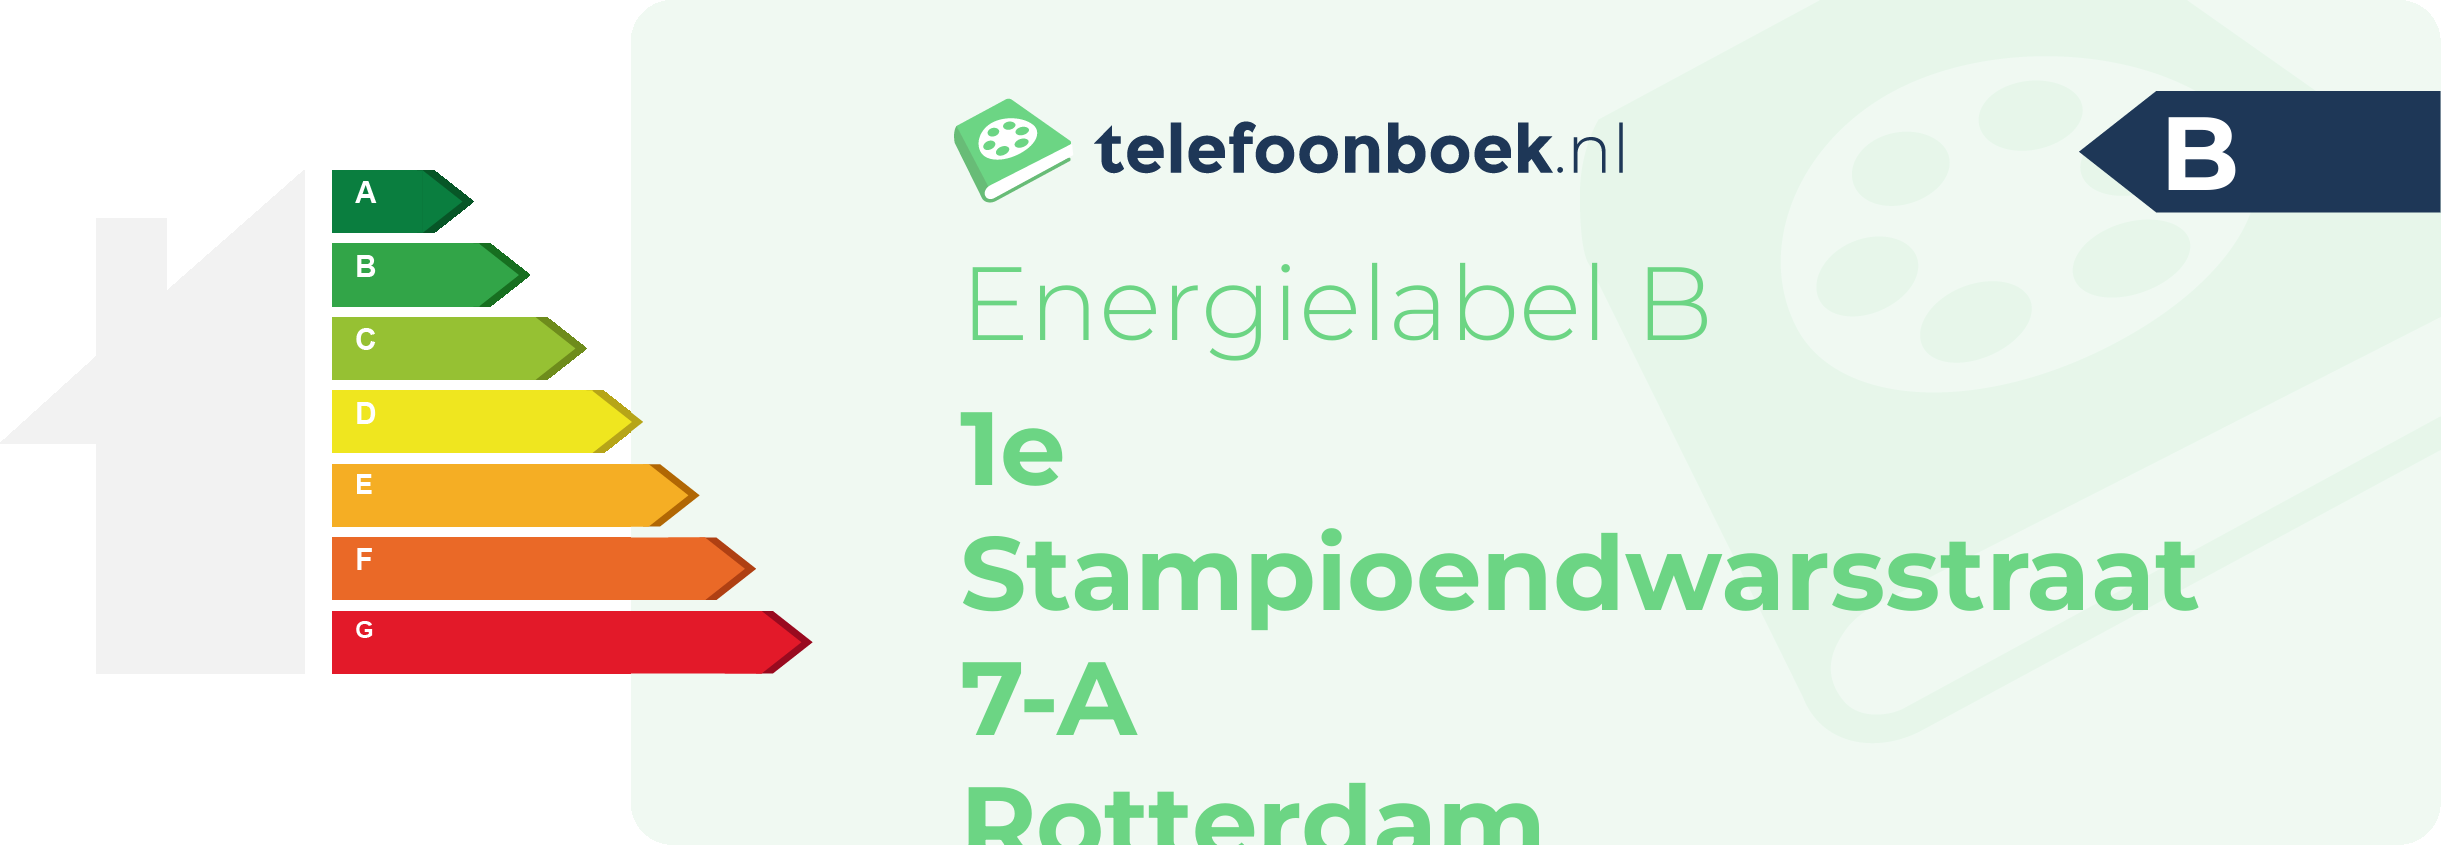 Energielabel 1e Stampioendwarsstraat 7-A Rotterdam